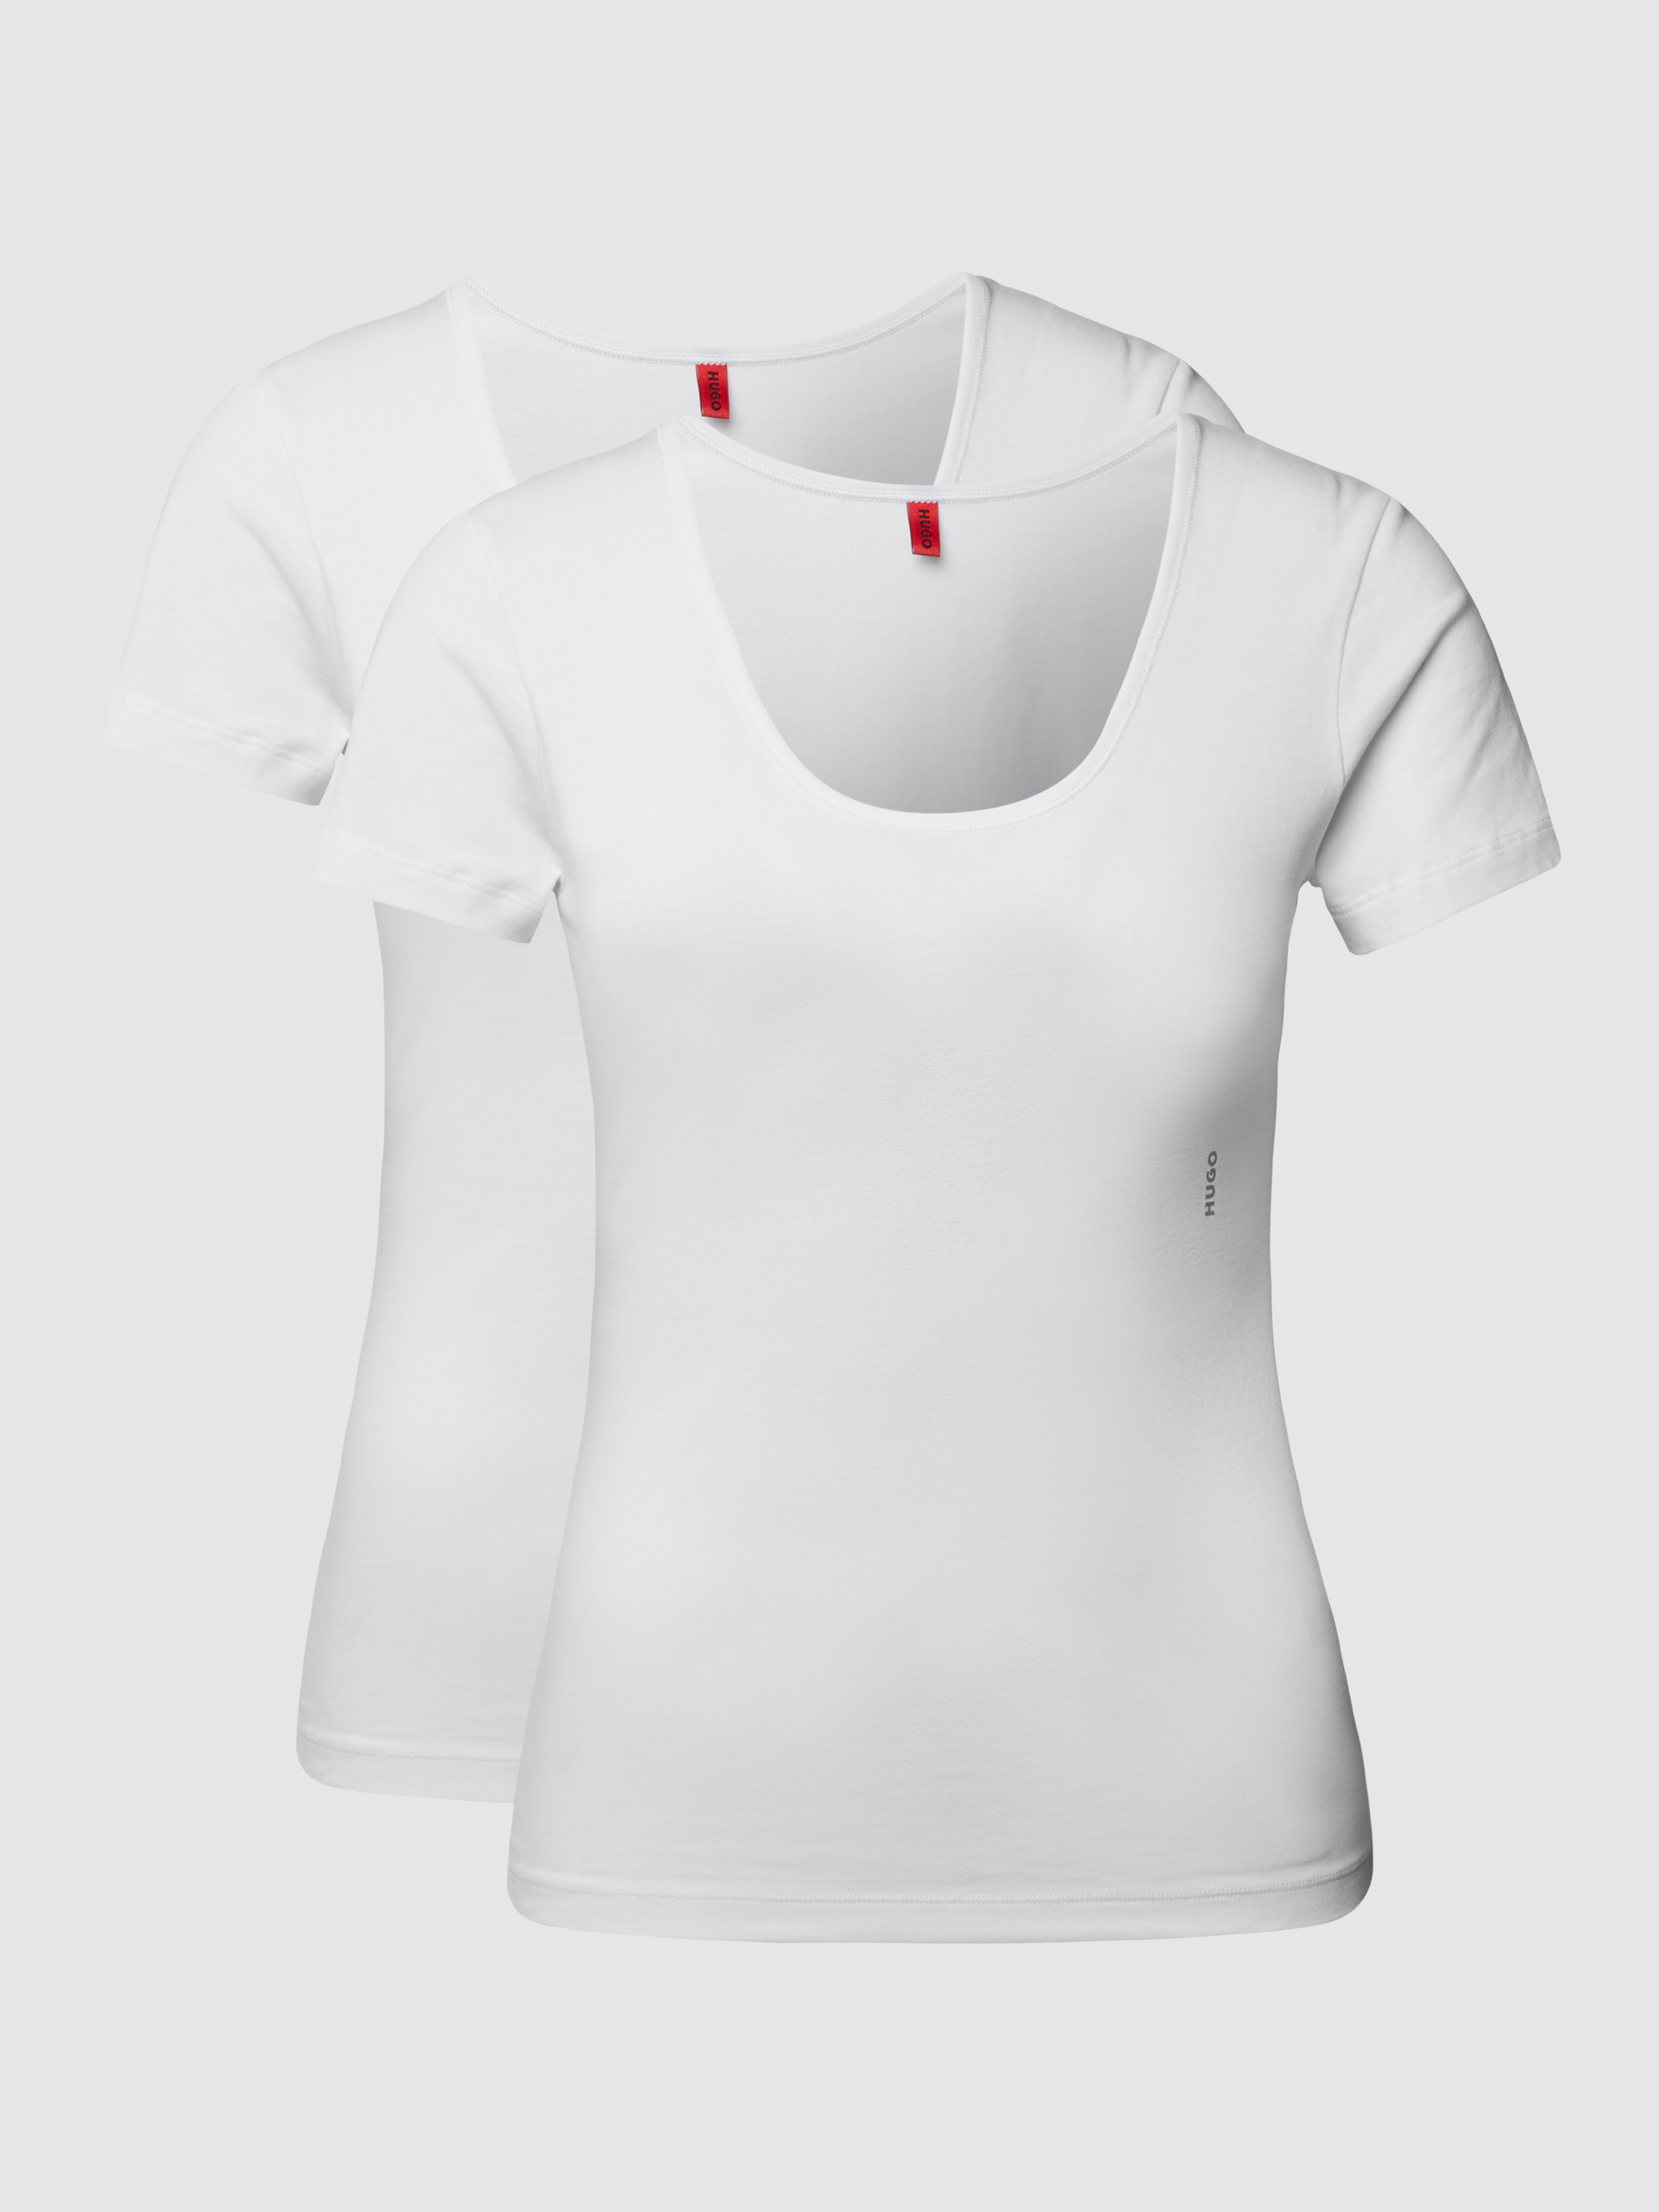 Комплект футболок женских HUGO BOSS 1483604 белых XL (доставка из-за рубежа)